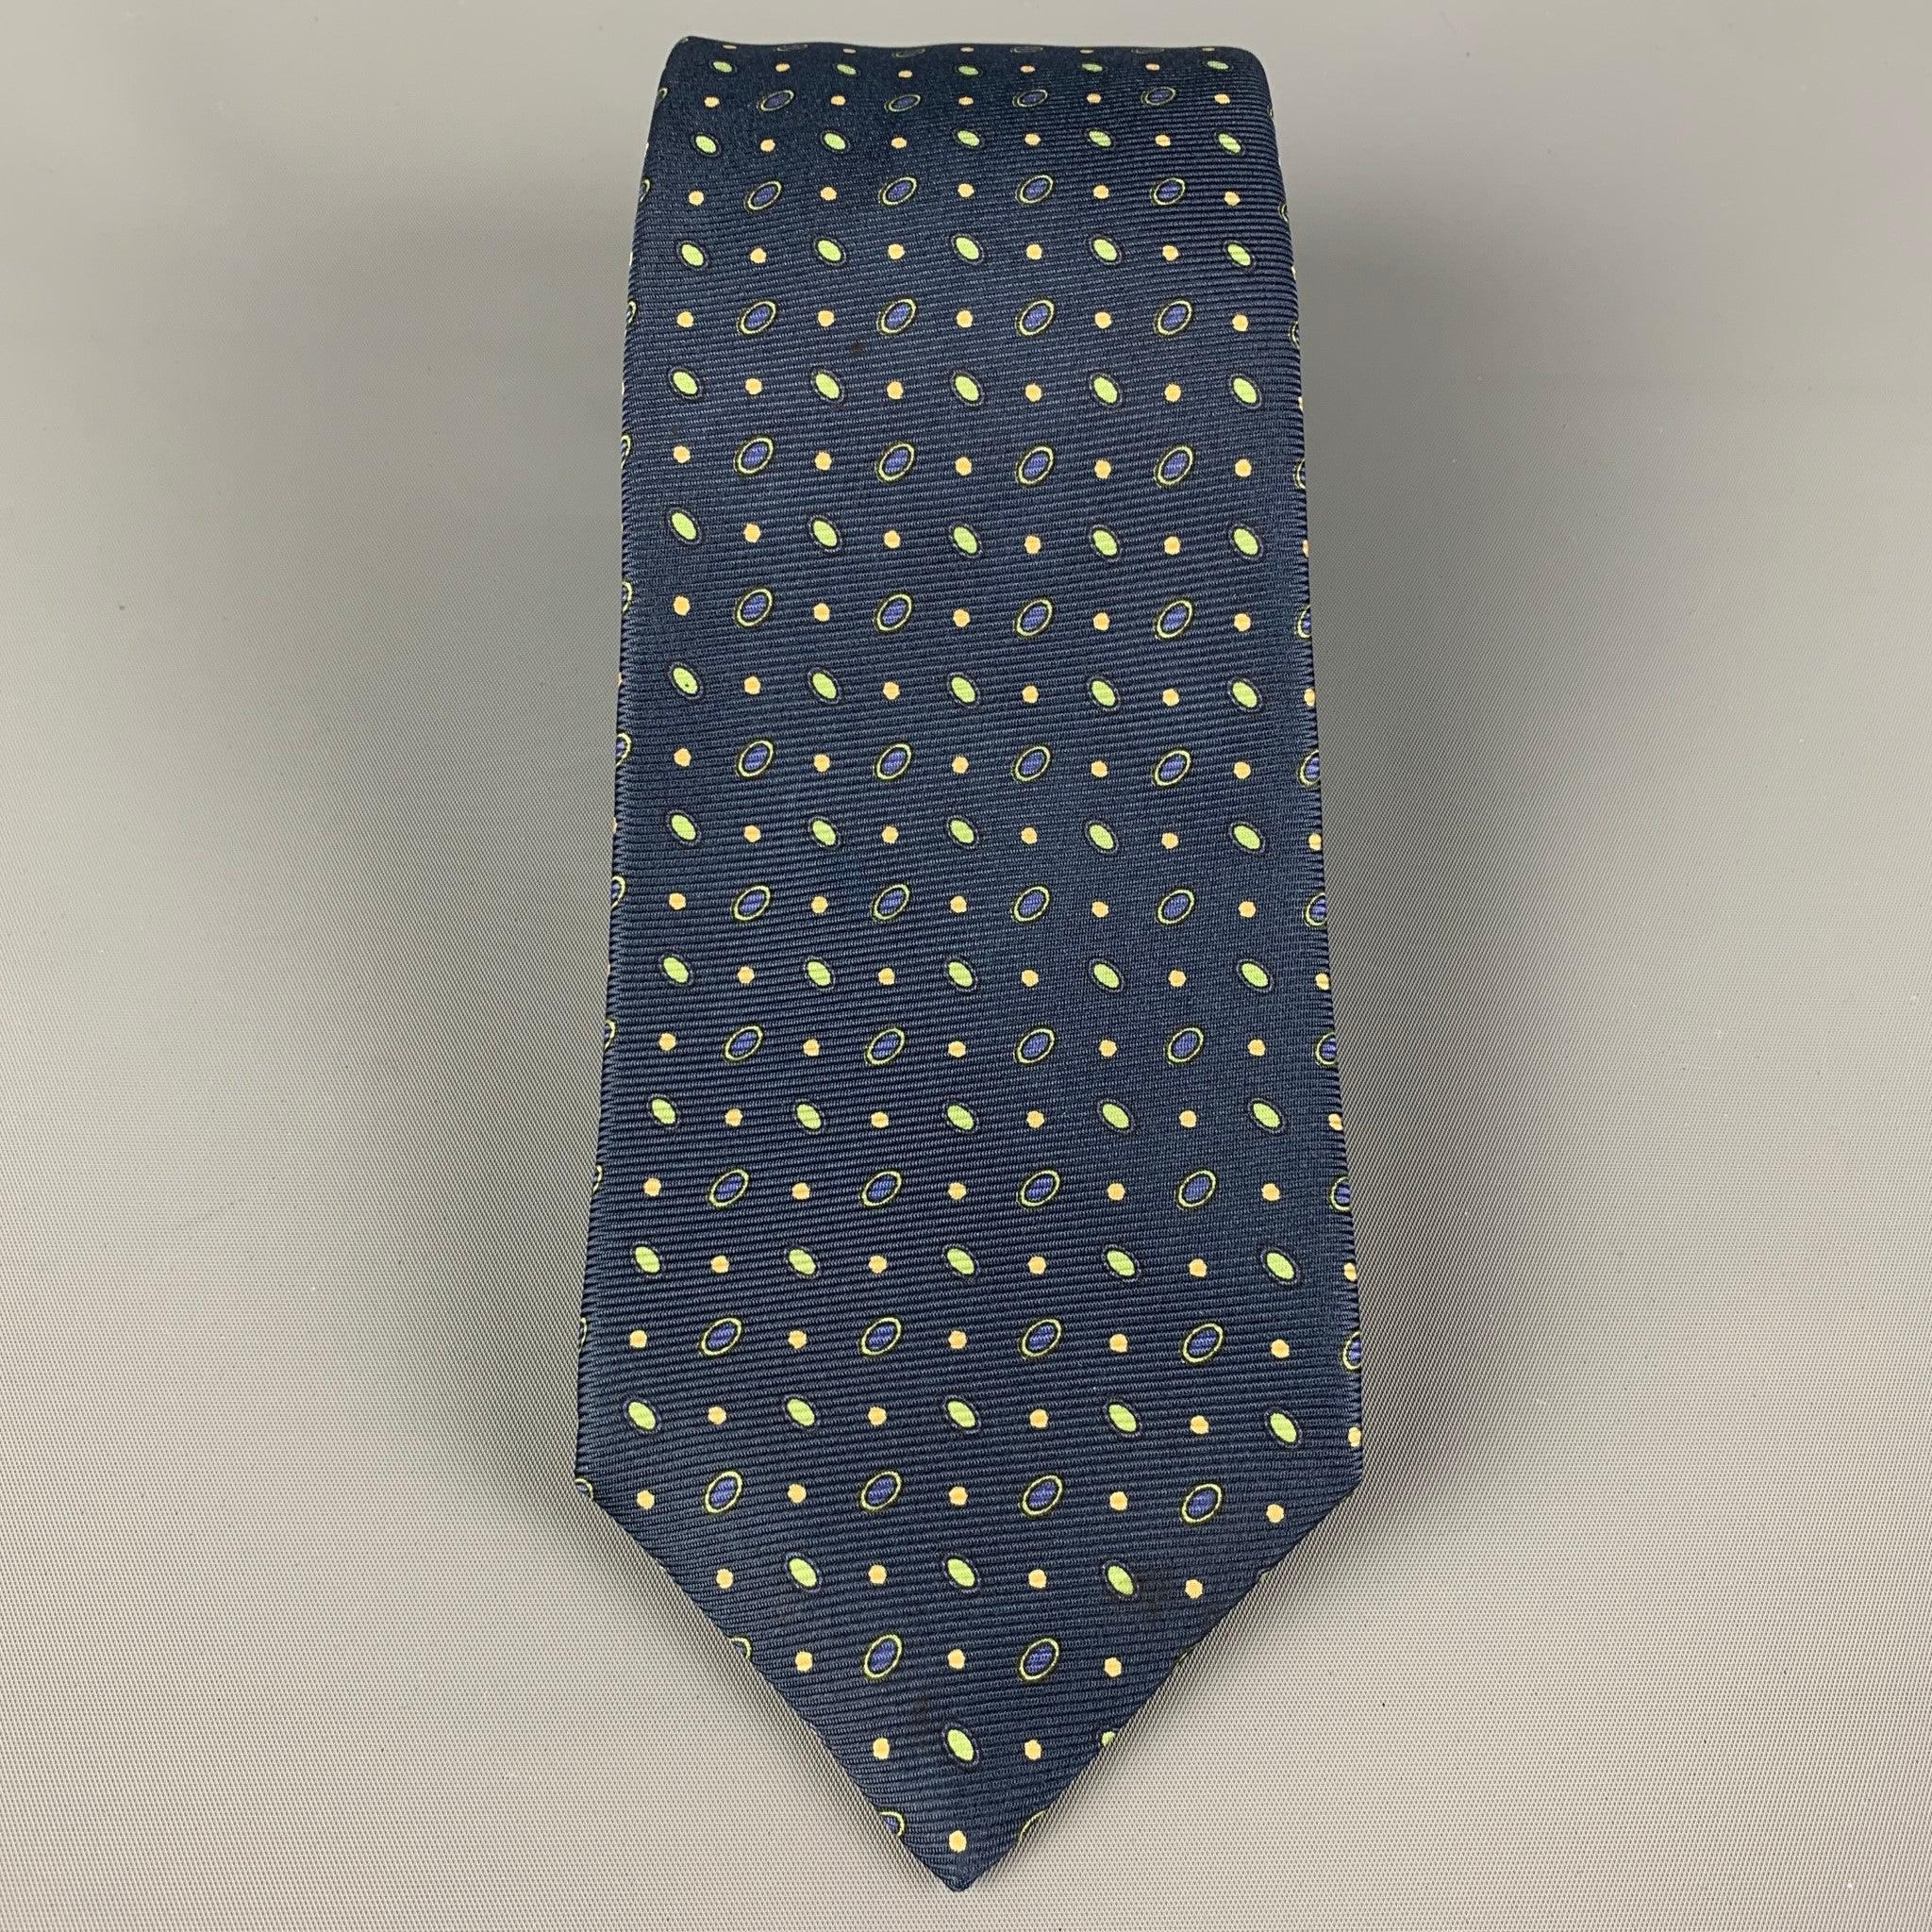 La cravate KITON est en soie marine et verte avec un imprimé à pois. Fabriqué en Italie. Très bon état d'origine. Largeur : 3.75 pouces  Longueur : 62 pouces 


  
  
 
Référence Sui Generis : 120385
Catégorie : Cravate
Plus de détails
    
Marque :